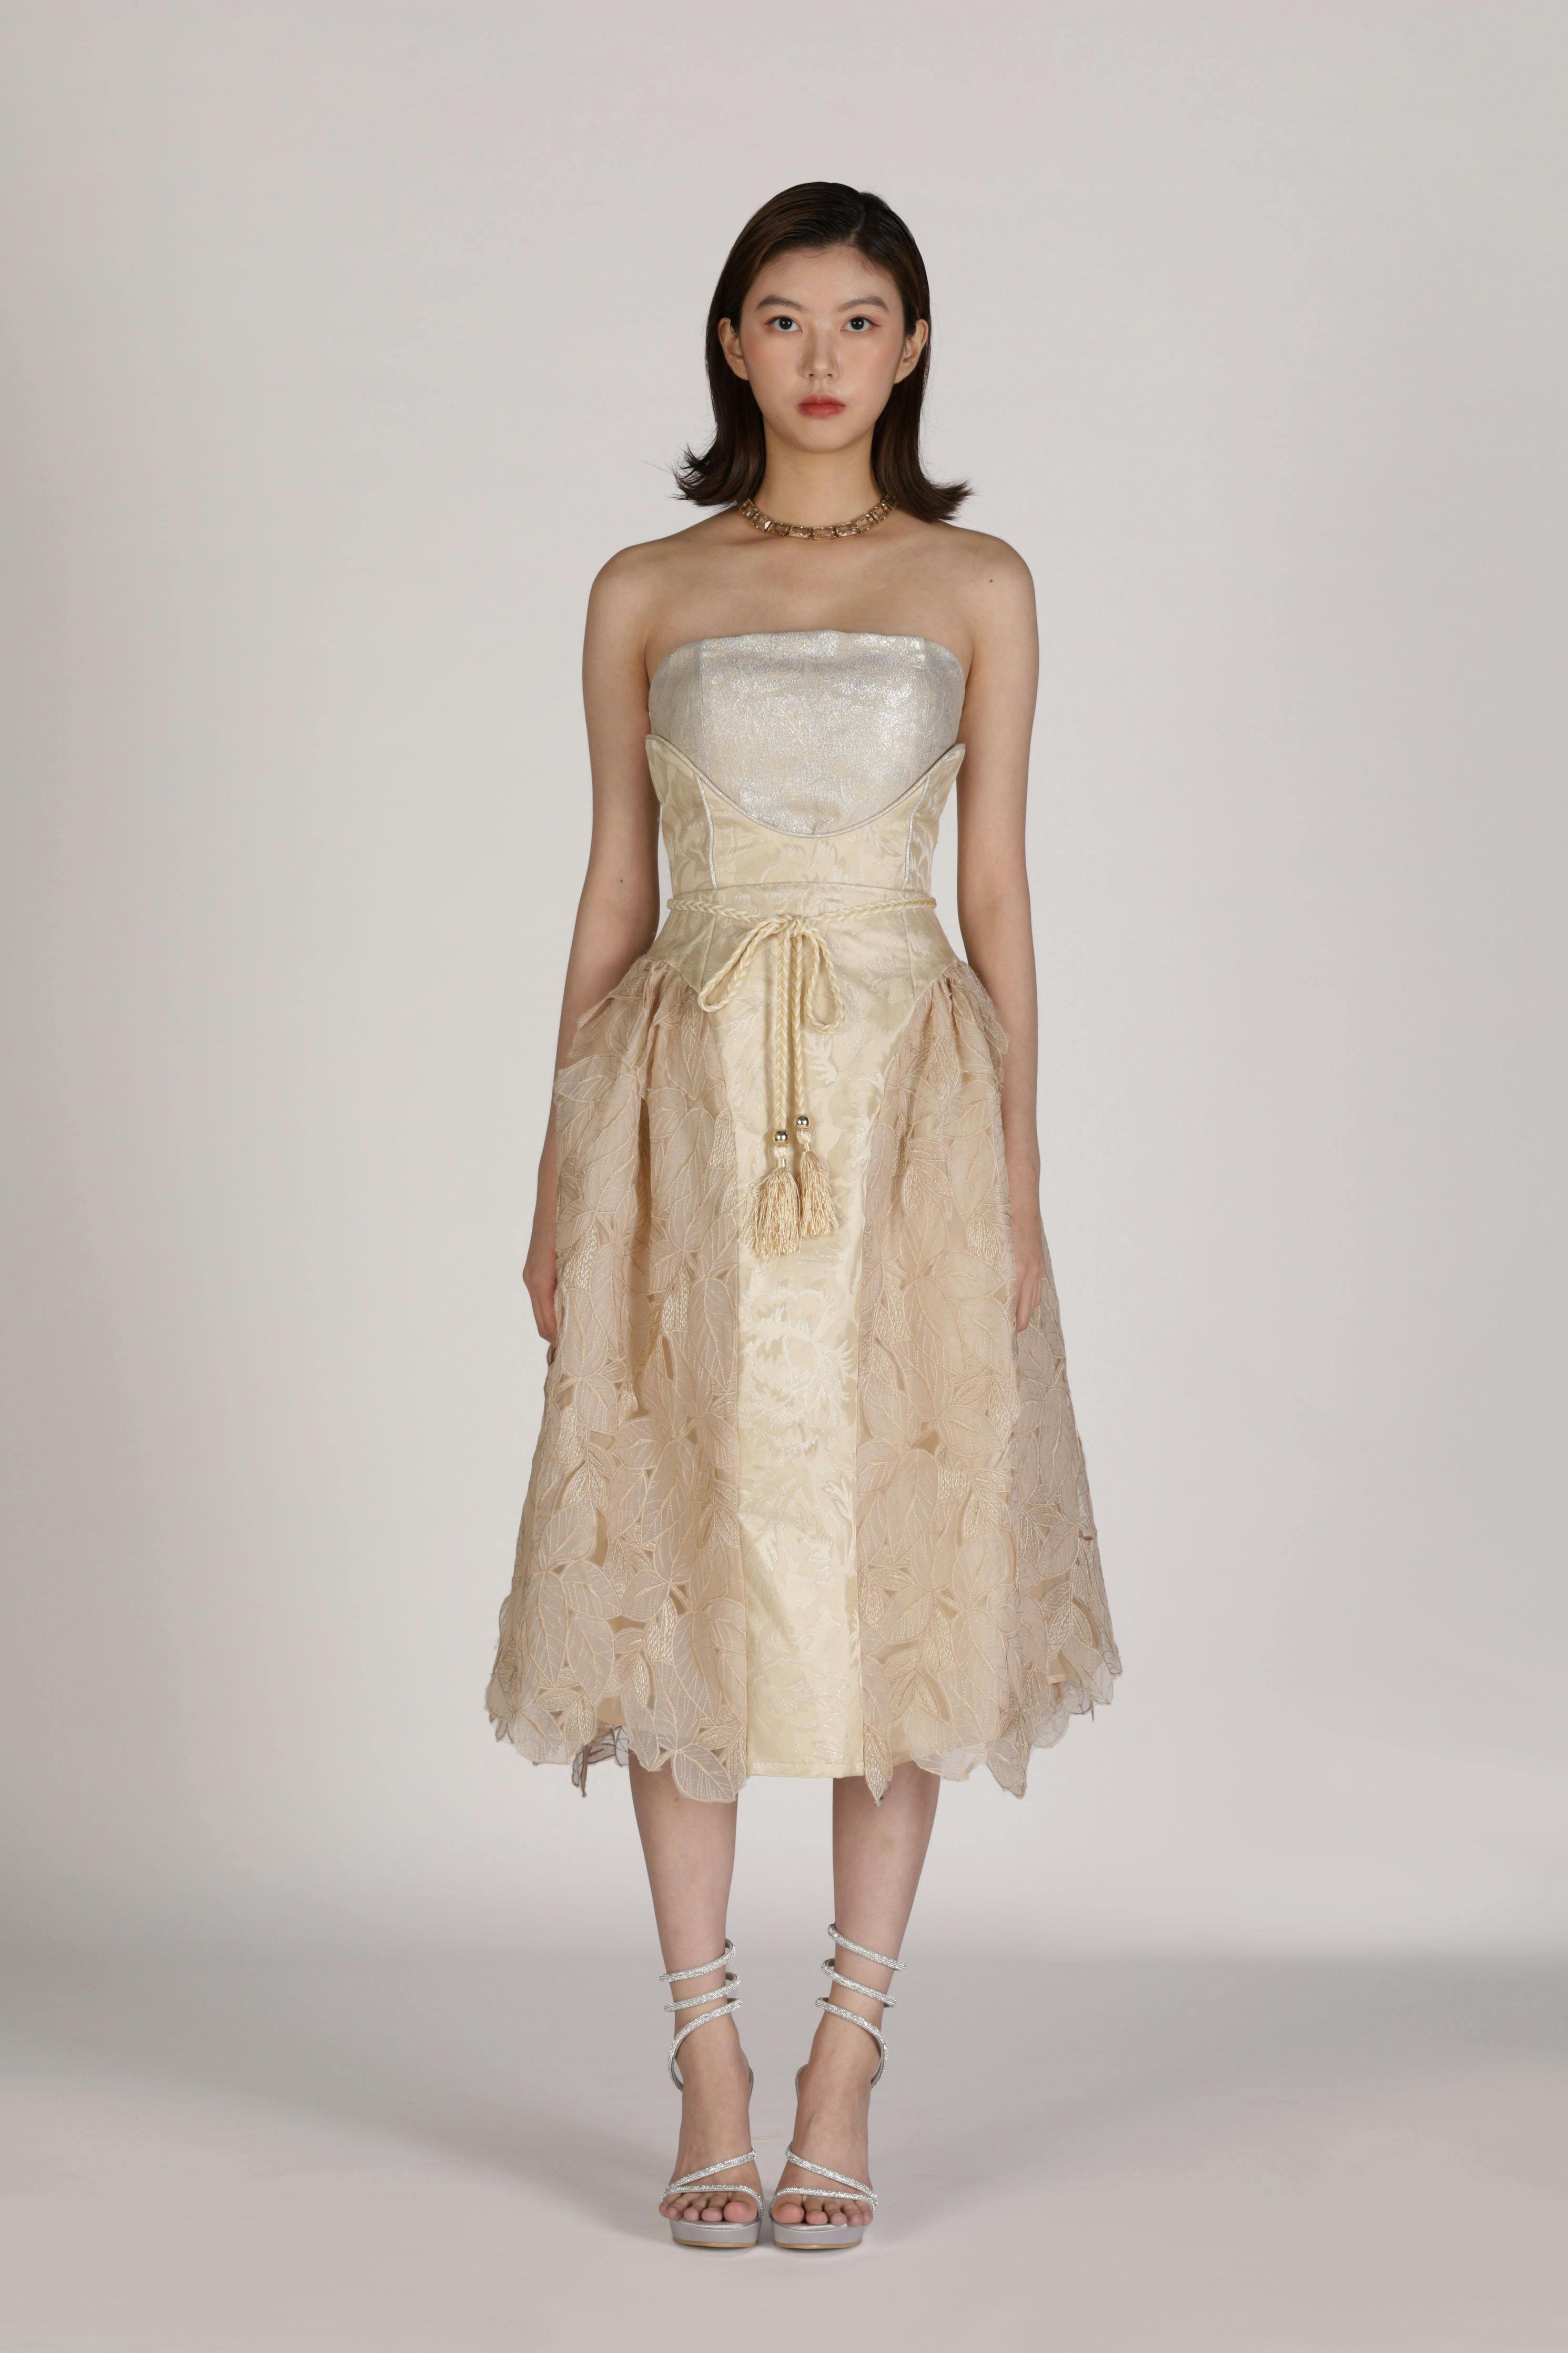 Belle Dress, a product by SZMAN